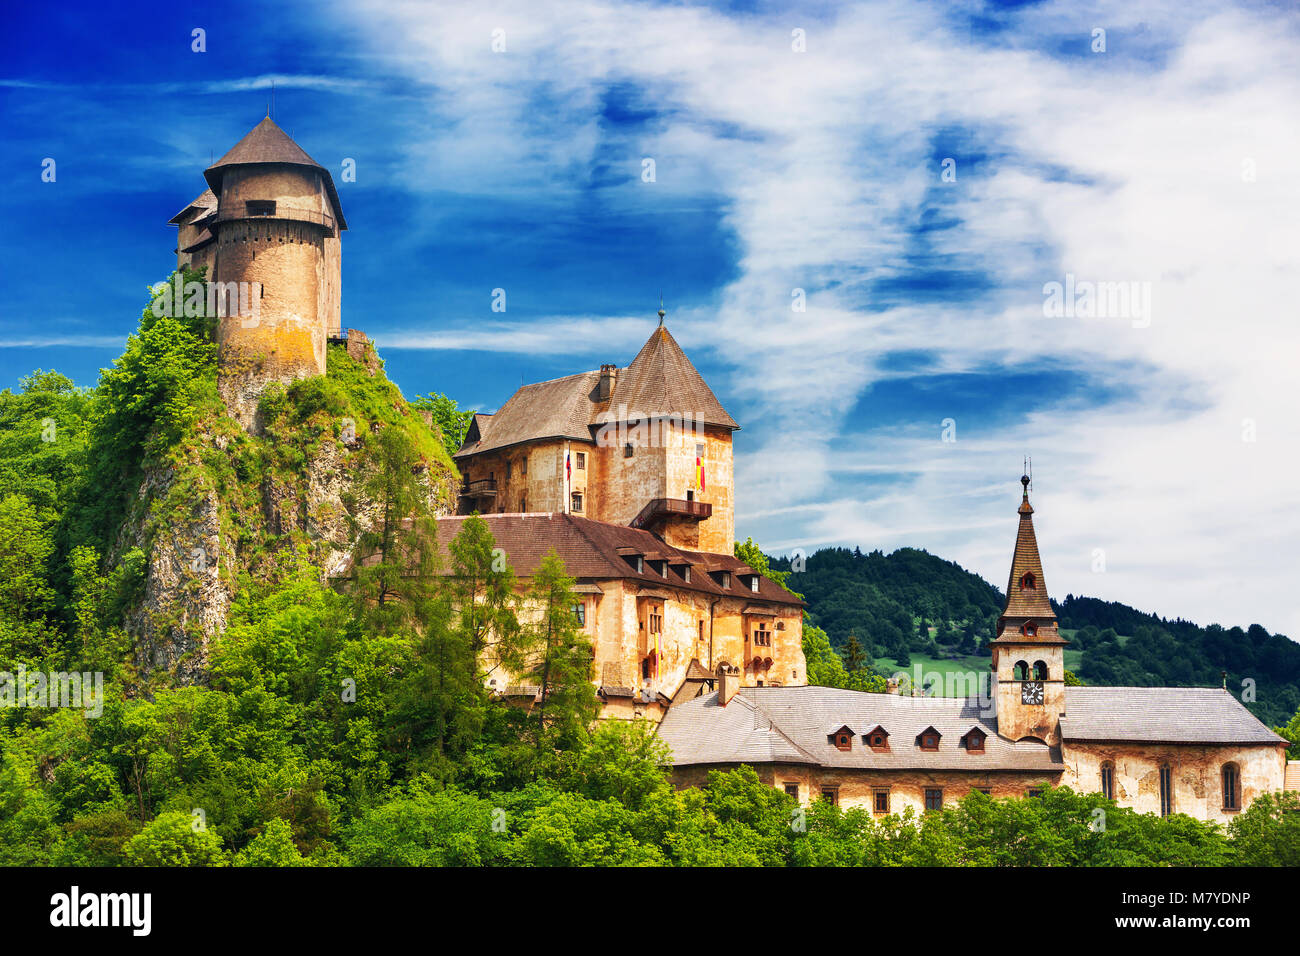 Romantisches Schloss Oravsky hrad - Burg Orava in Oravsky Podzamok, Slowakei Stockfoto